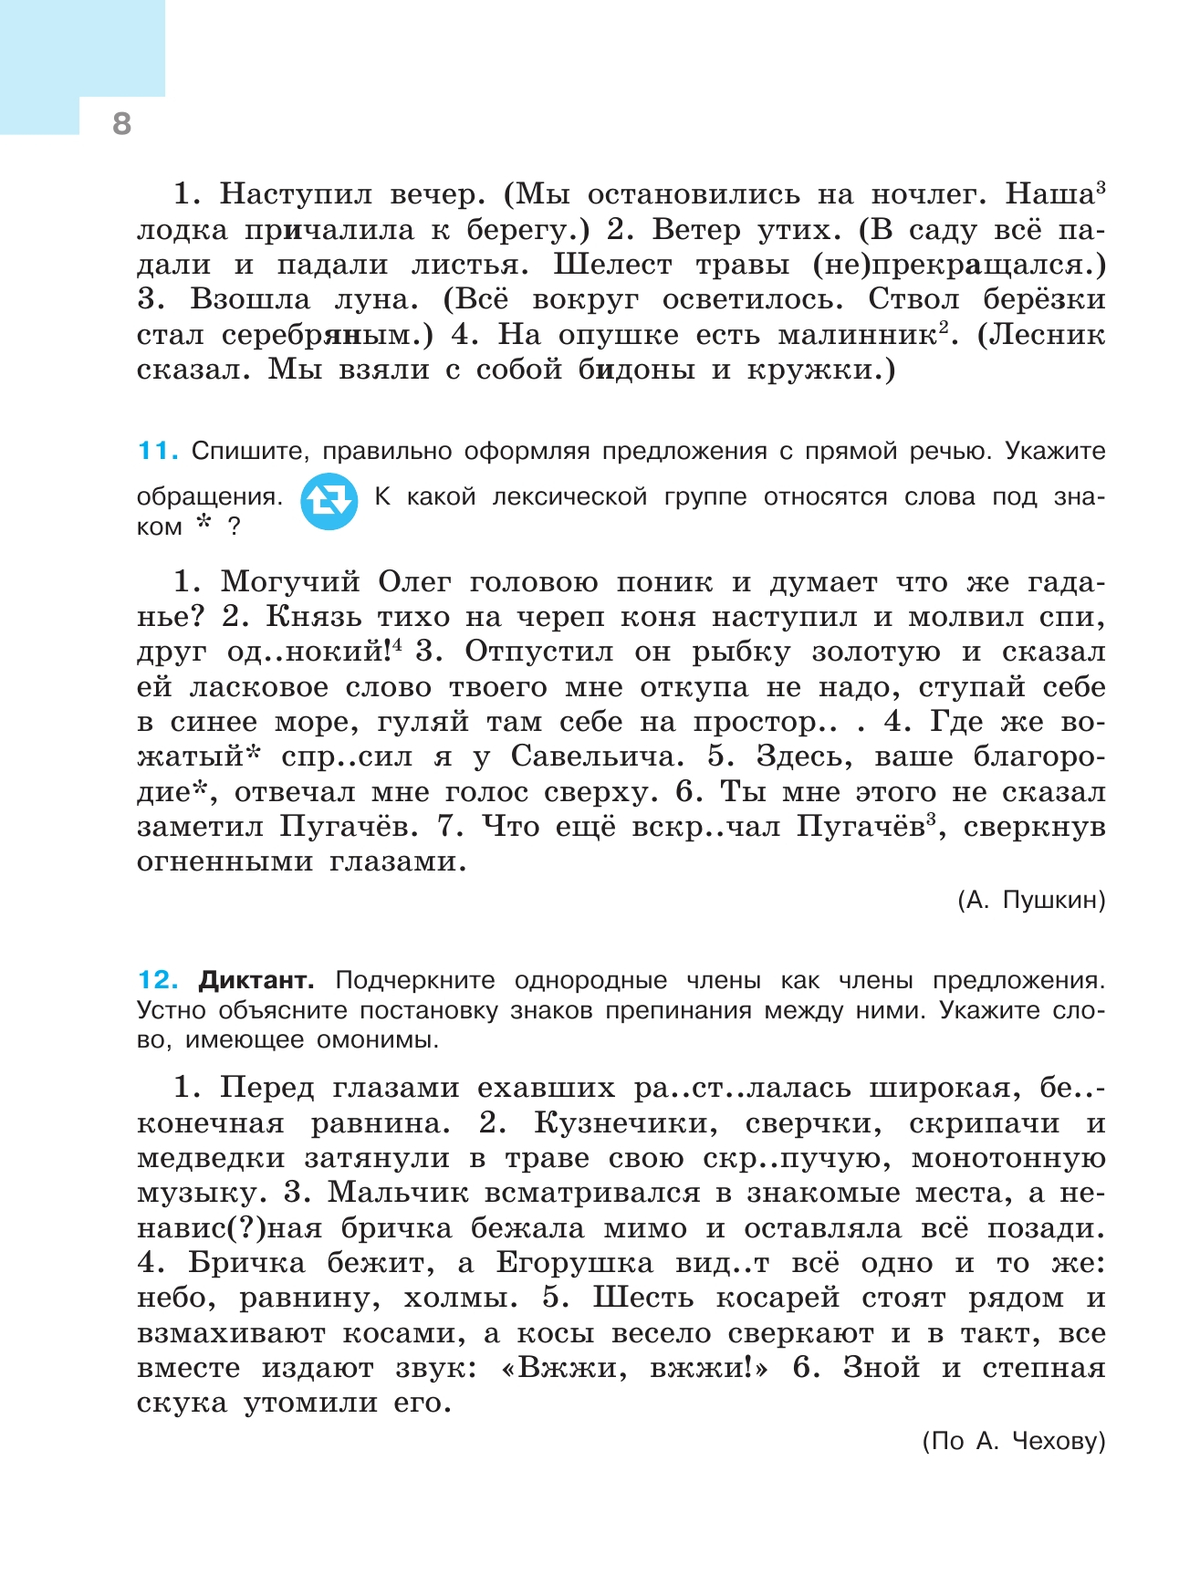 Русский язык. 7 класс. Учебник. В 2 ч. Часть 1 4